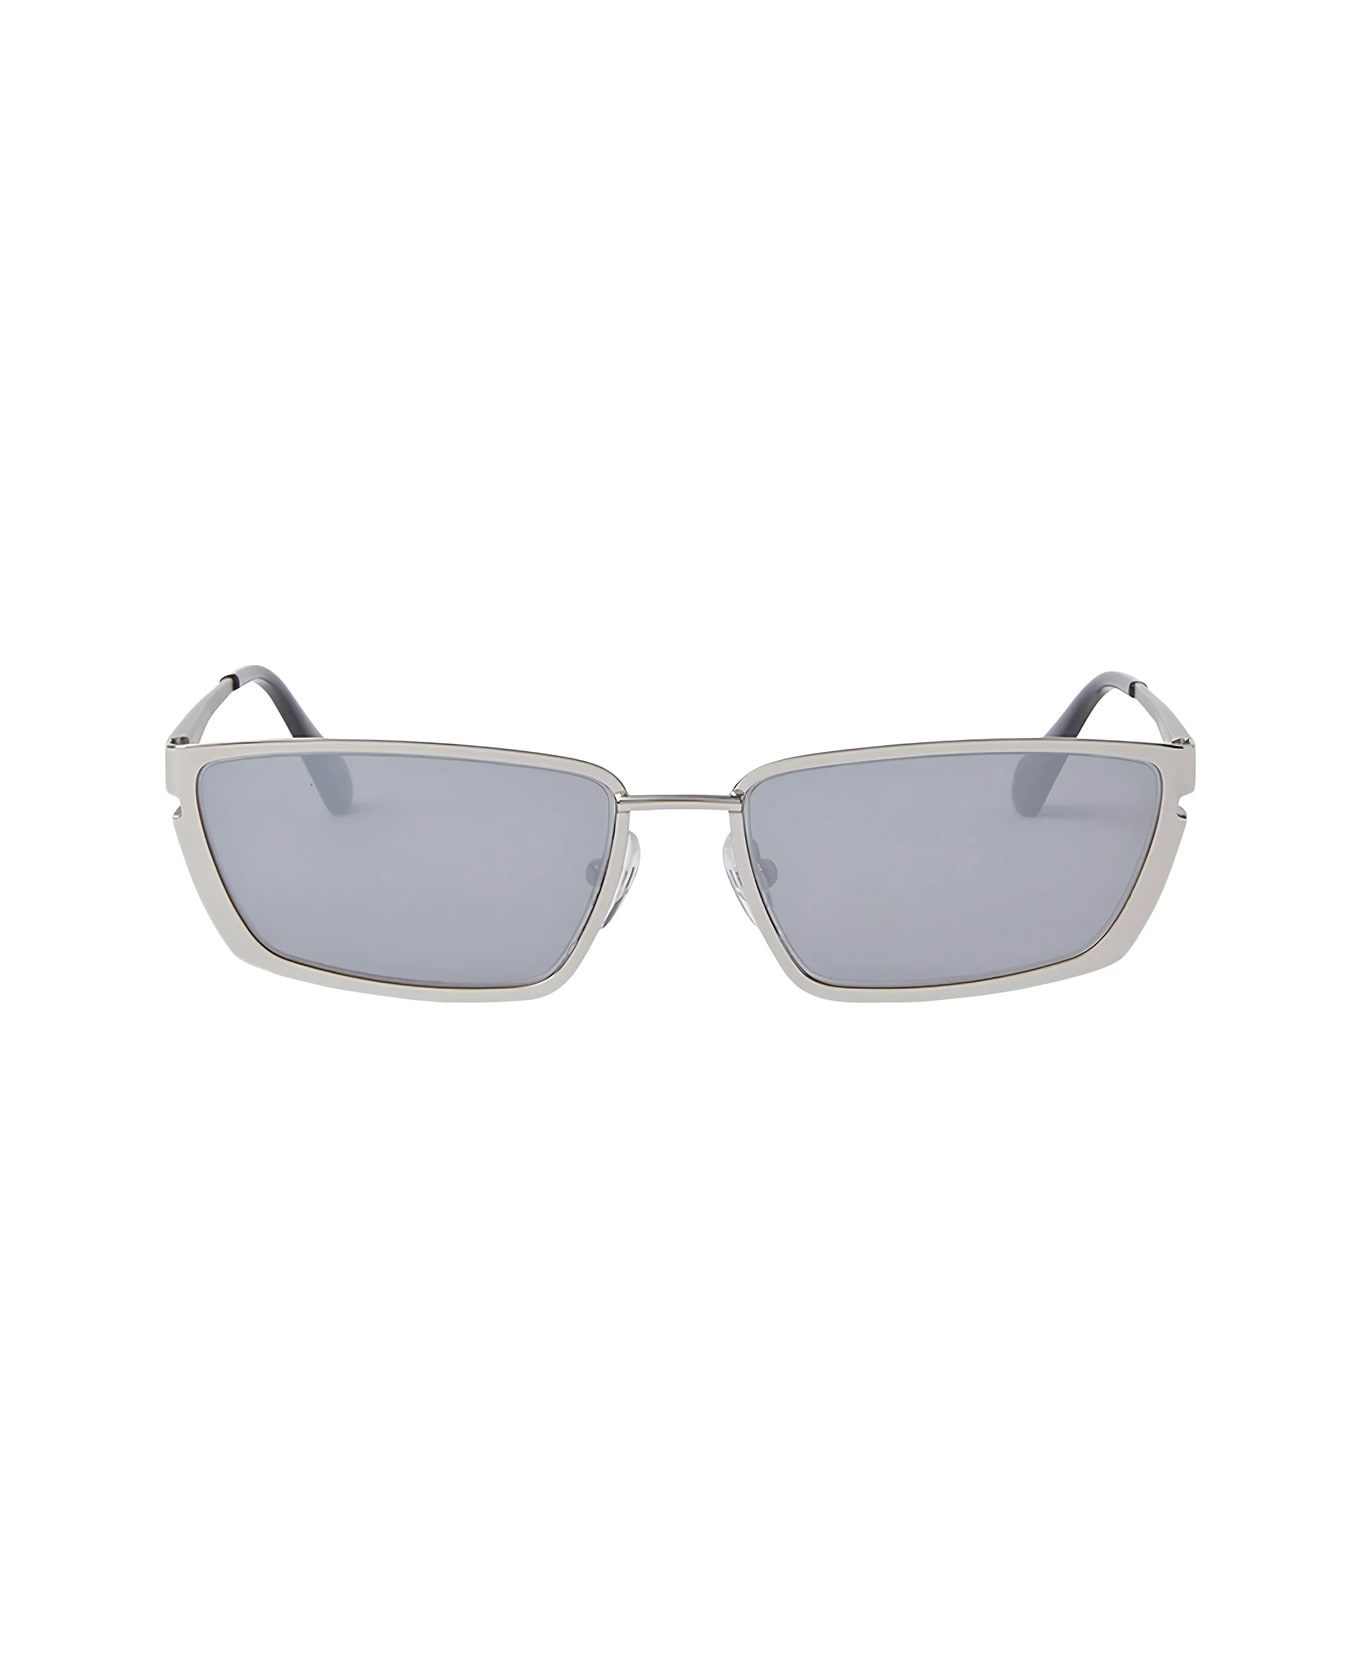 Off-White Oeri119 Richfield 7272 Silver Silver Sunglasses - Argento サングラス